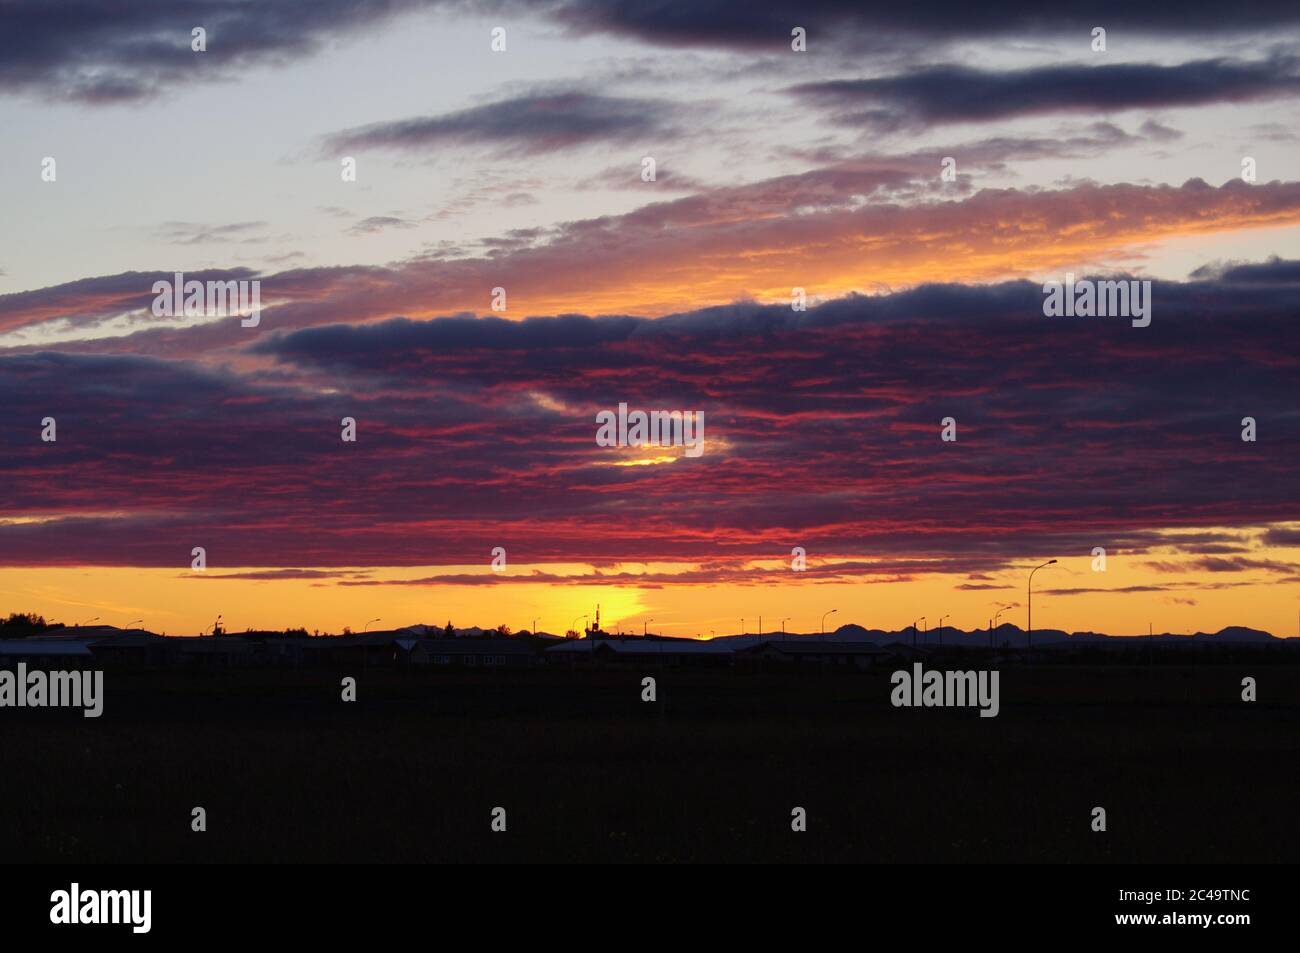 Magentafarbene Wolken bei Sonnenuntergang über Silhouette Horizont,Bildfolge eines Sonnenuntergangs,Blauer Himmel mit magentafarbenen Wolken bei Sonnenuntergang,untergehende Sonne Magentafarben Wolken, Stockfoto